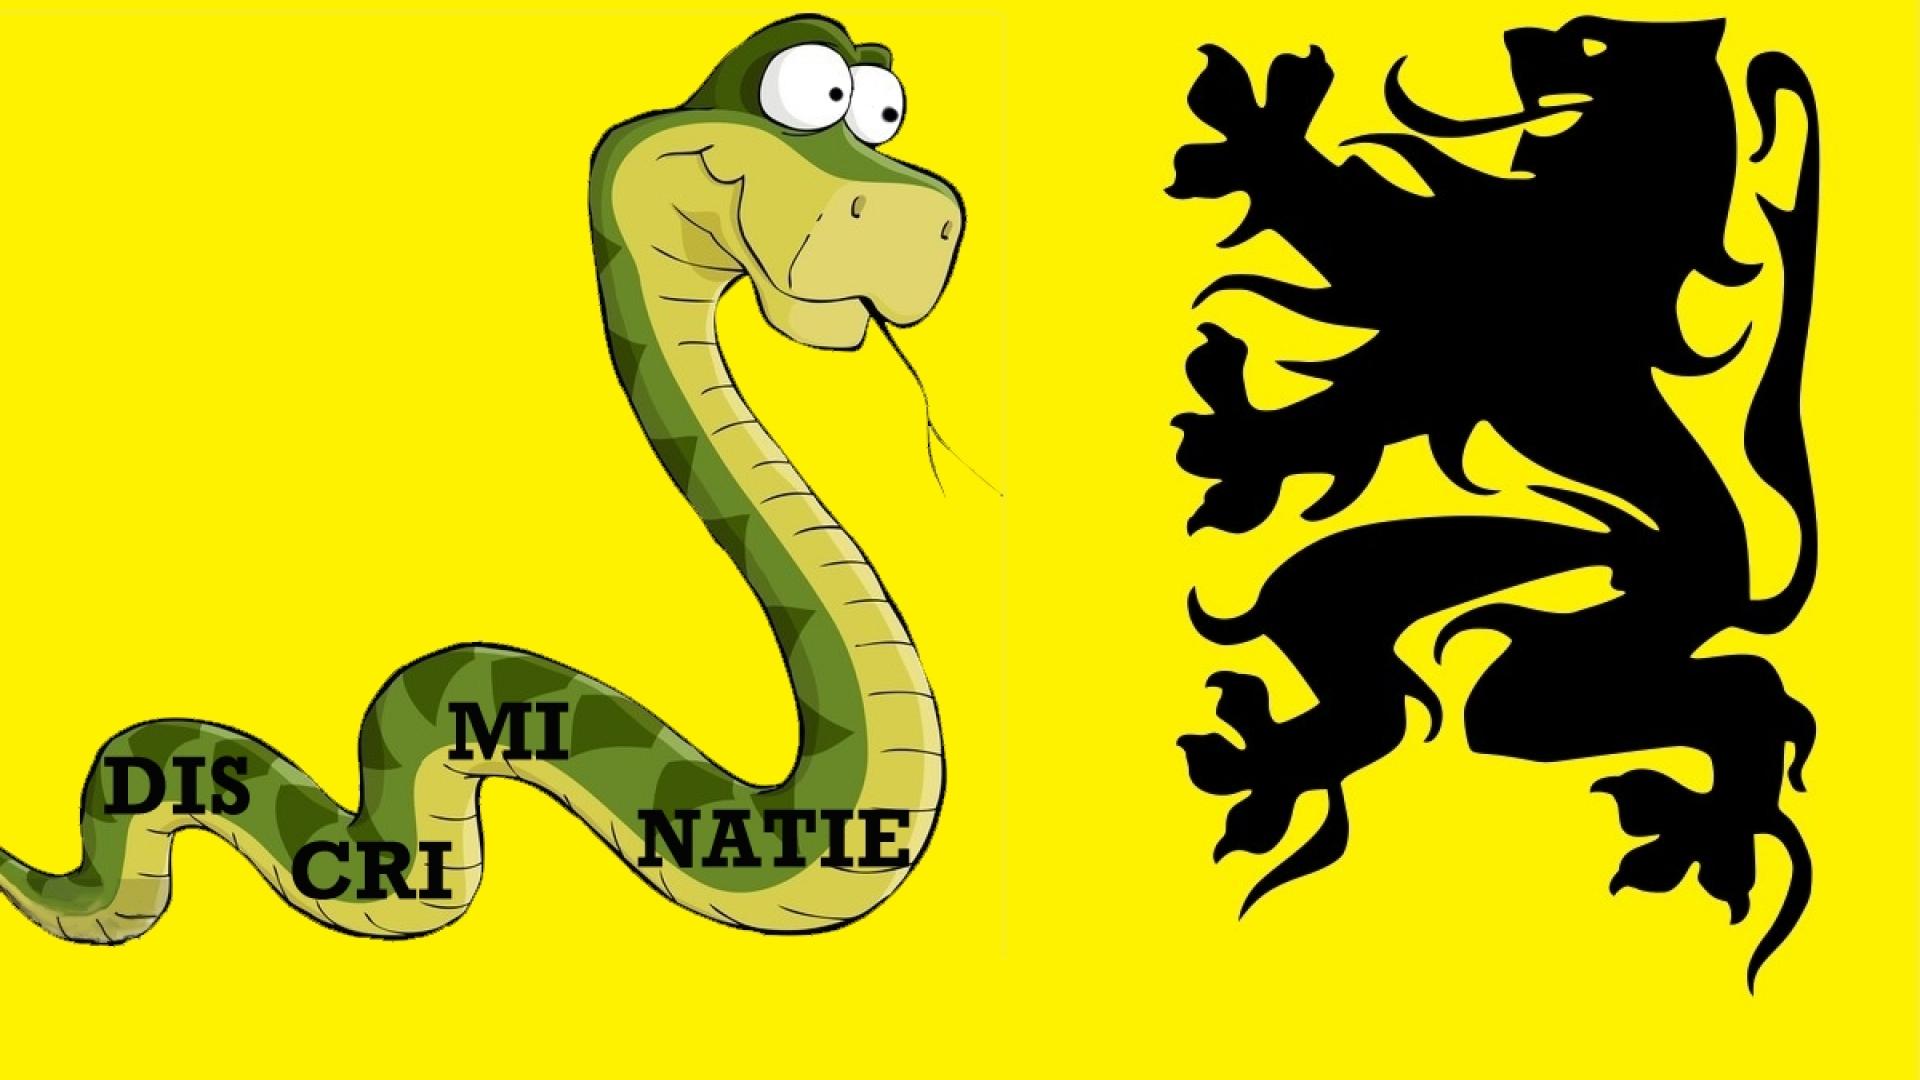 Vlaamse vlag, maar de leeuw vecht tegen een slang waarop de tekst DISCRIMINATIE staat.